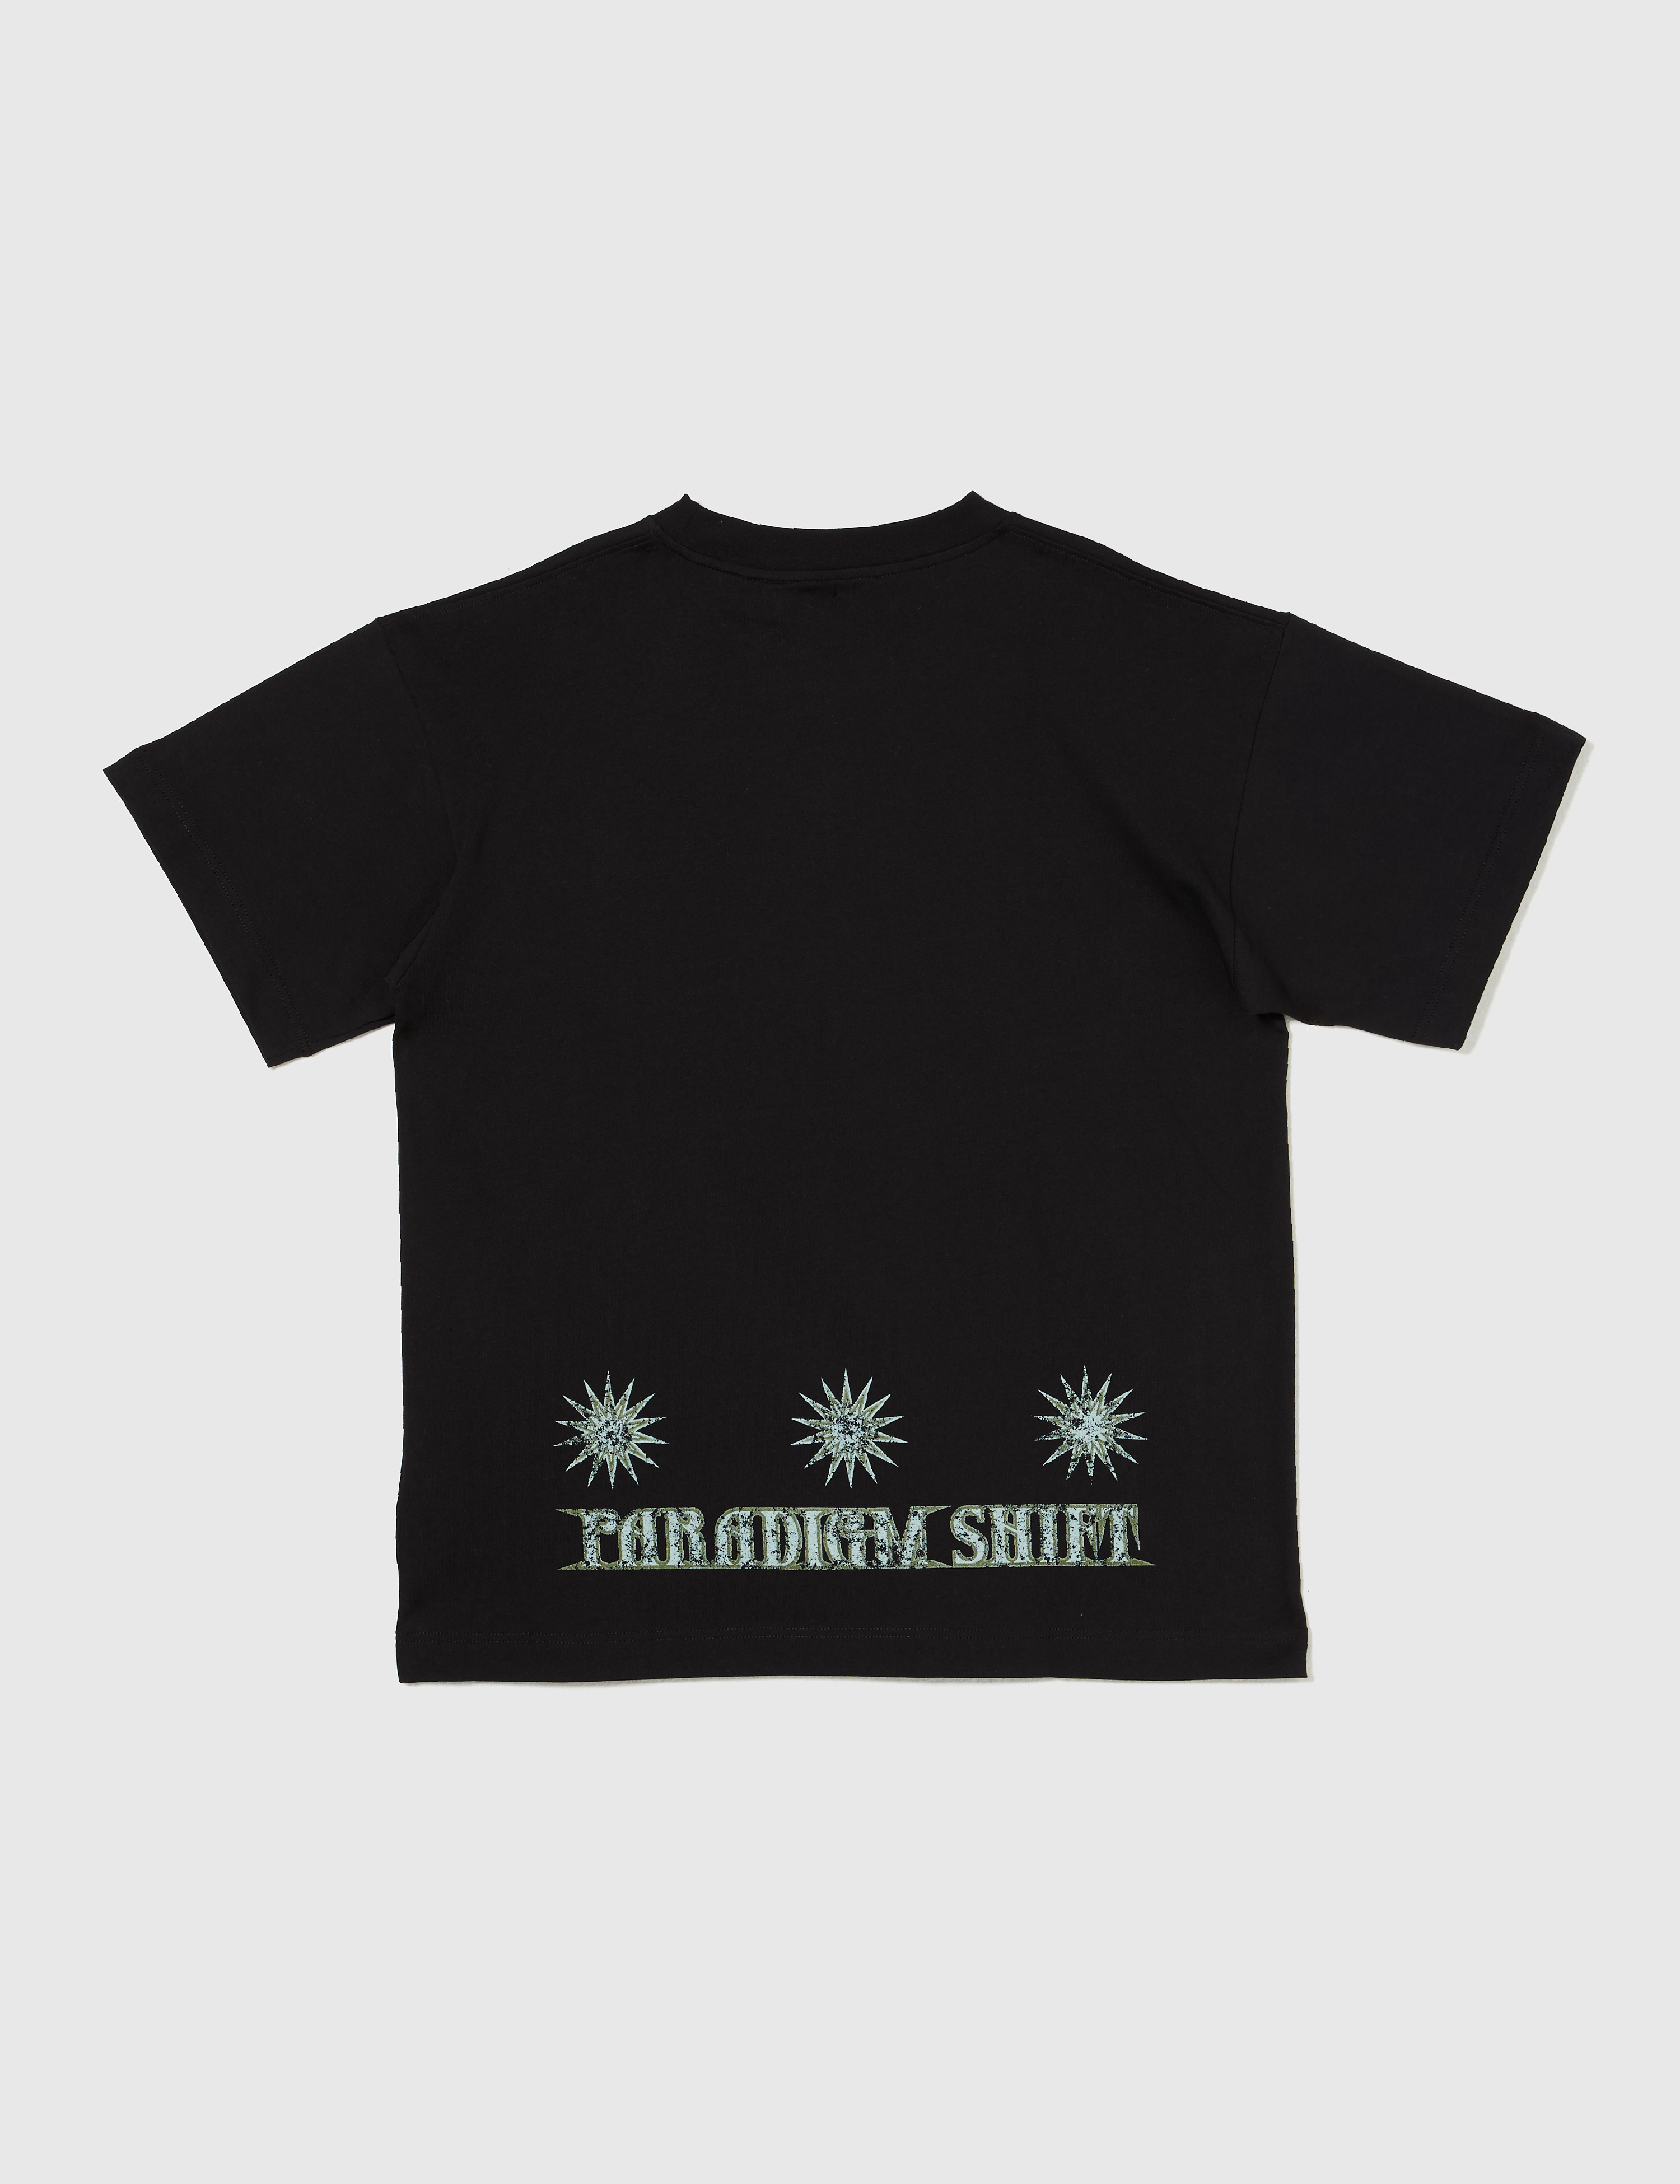 Paradigm Shift T-Shirt